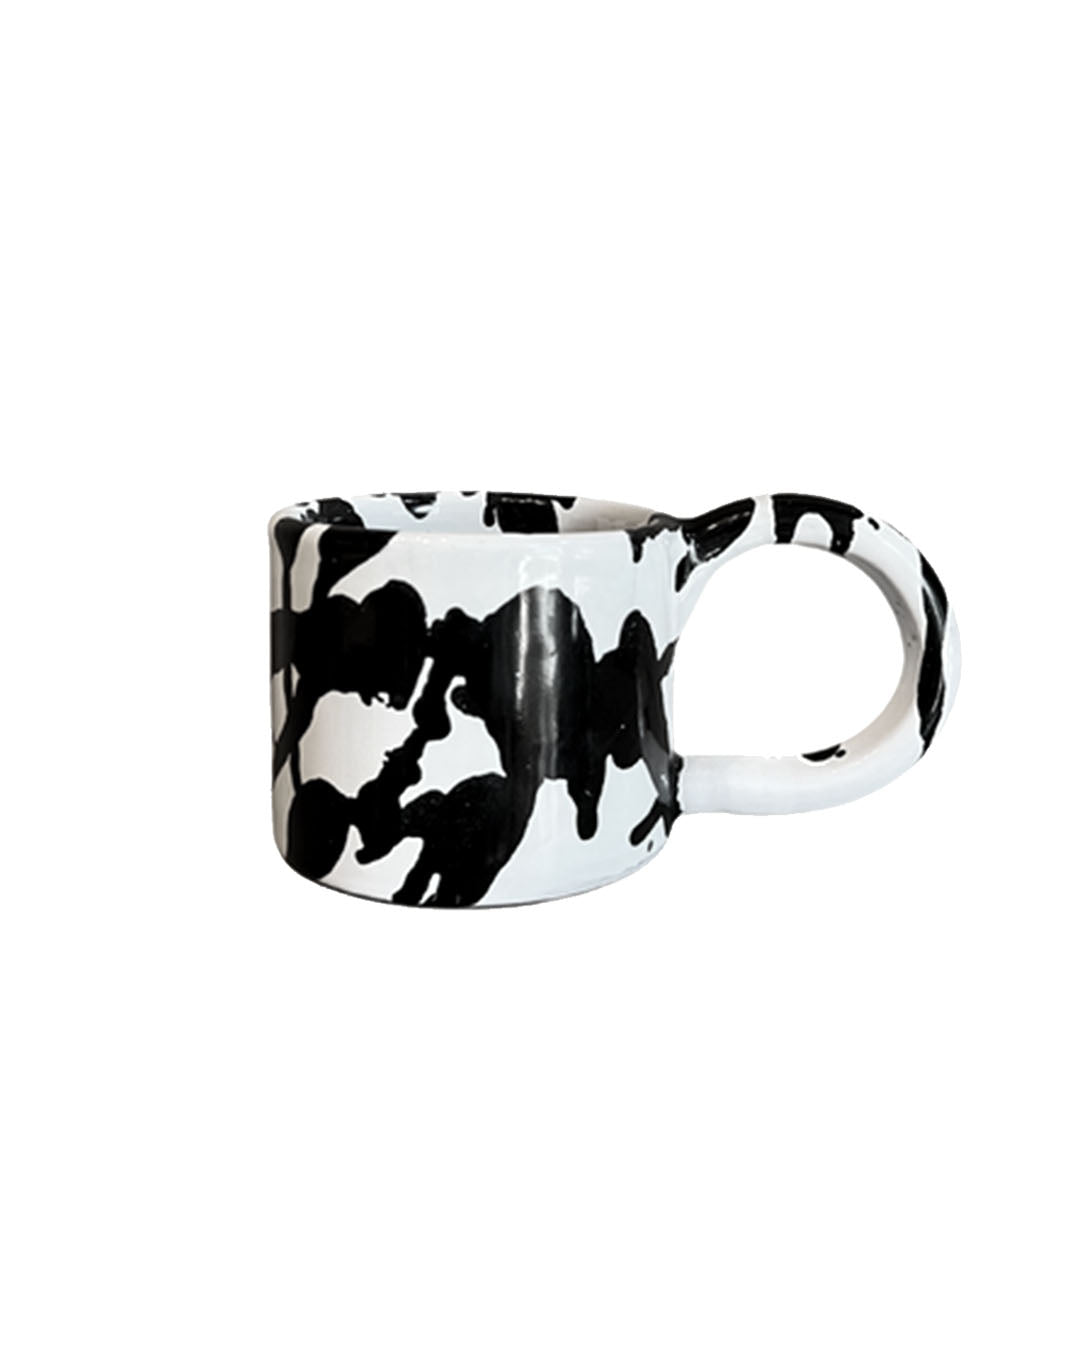 Ceramic Mug black white handmade